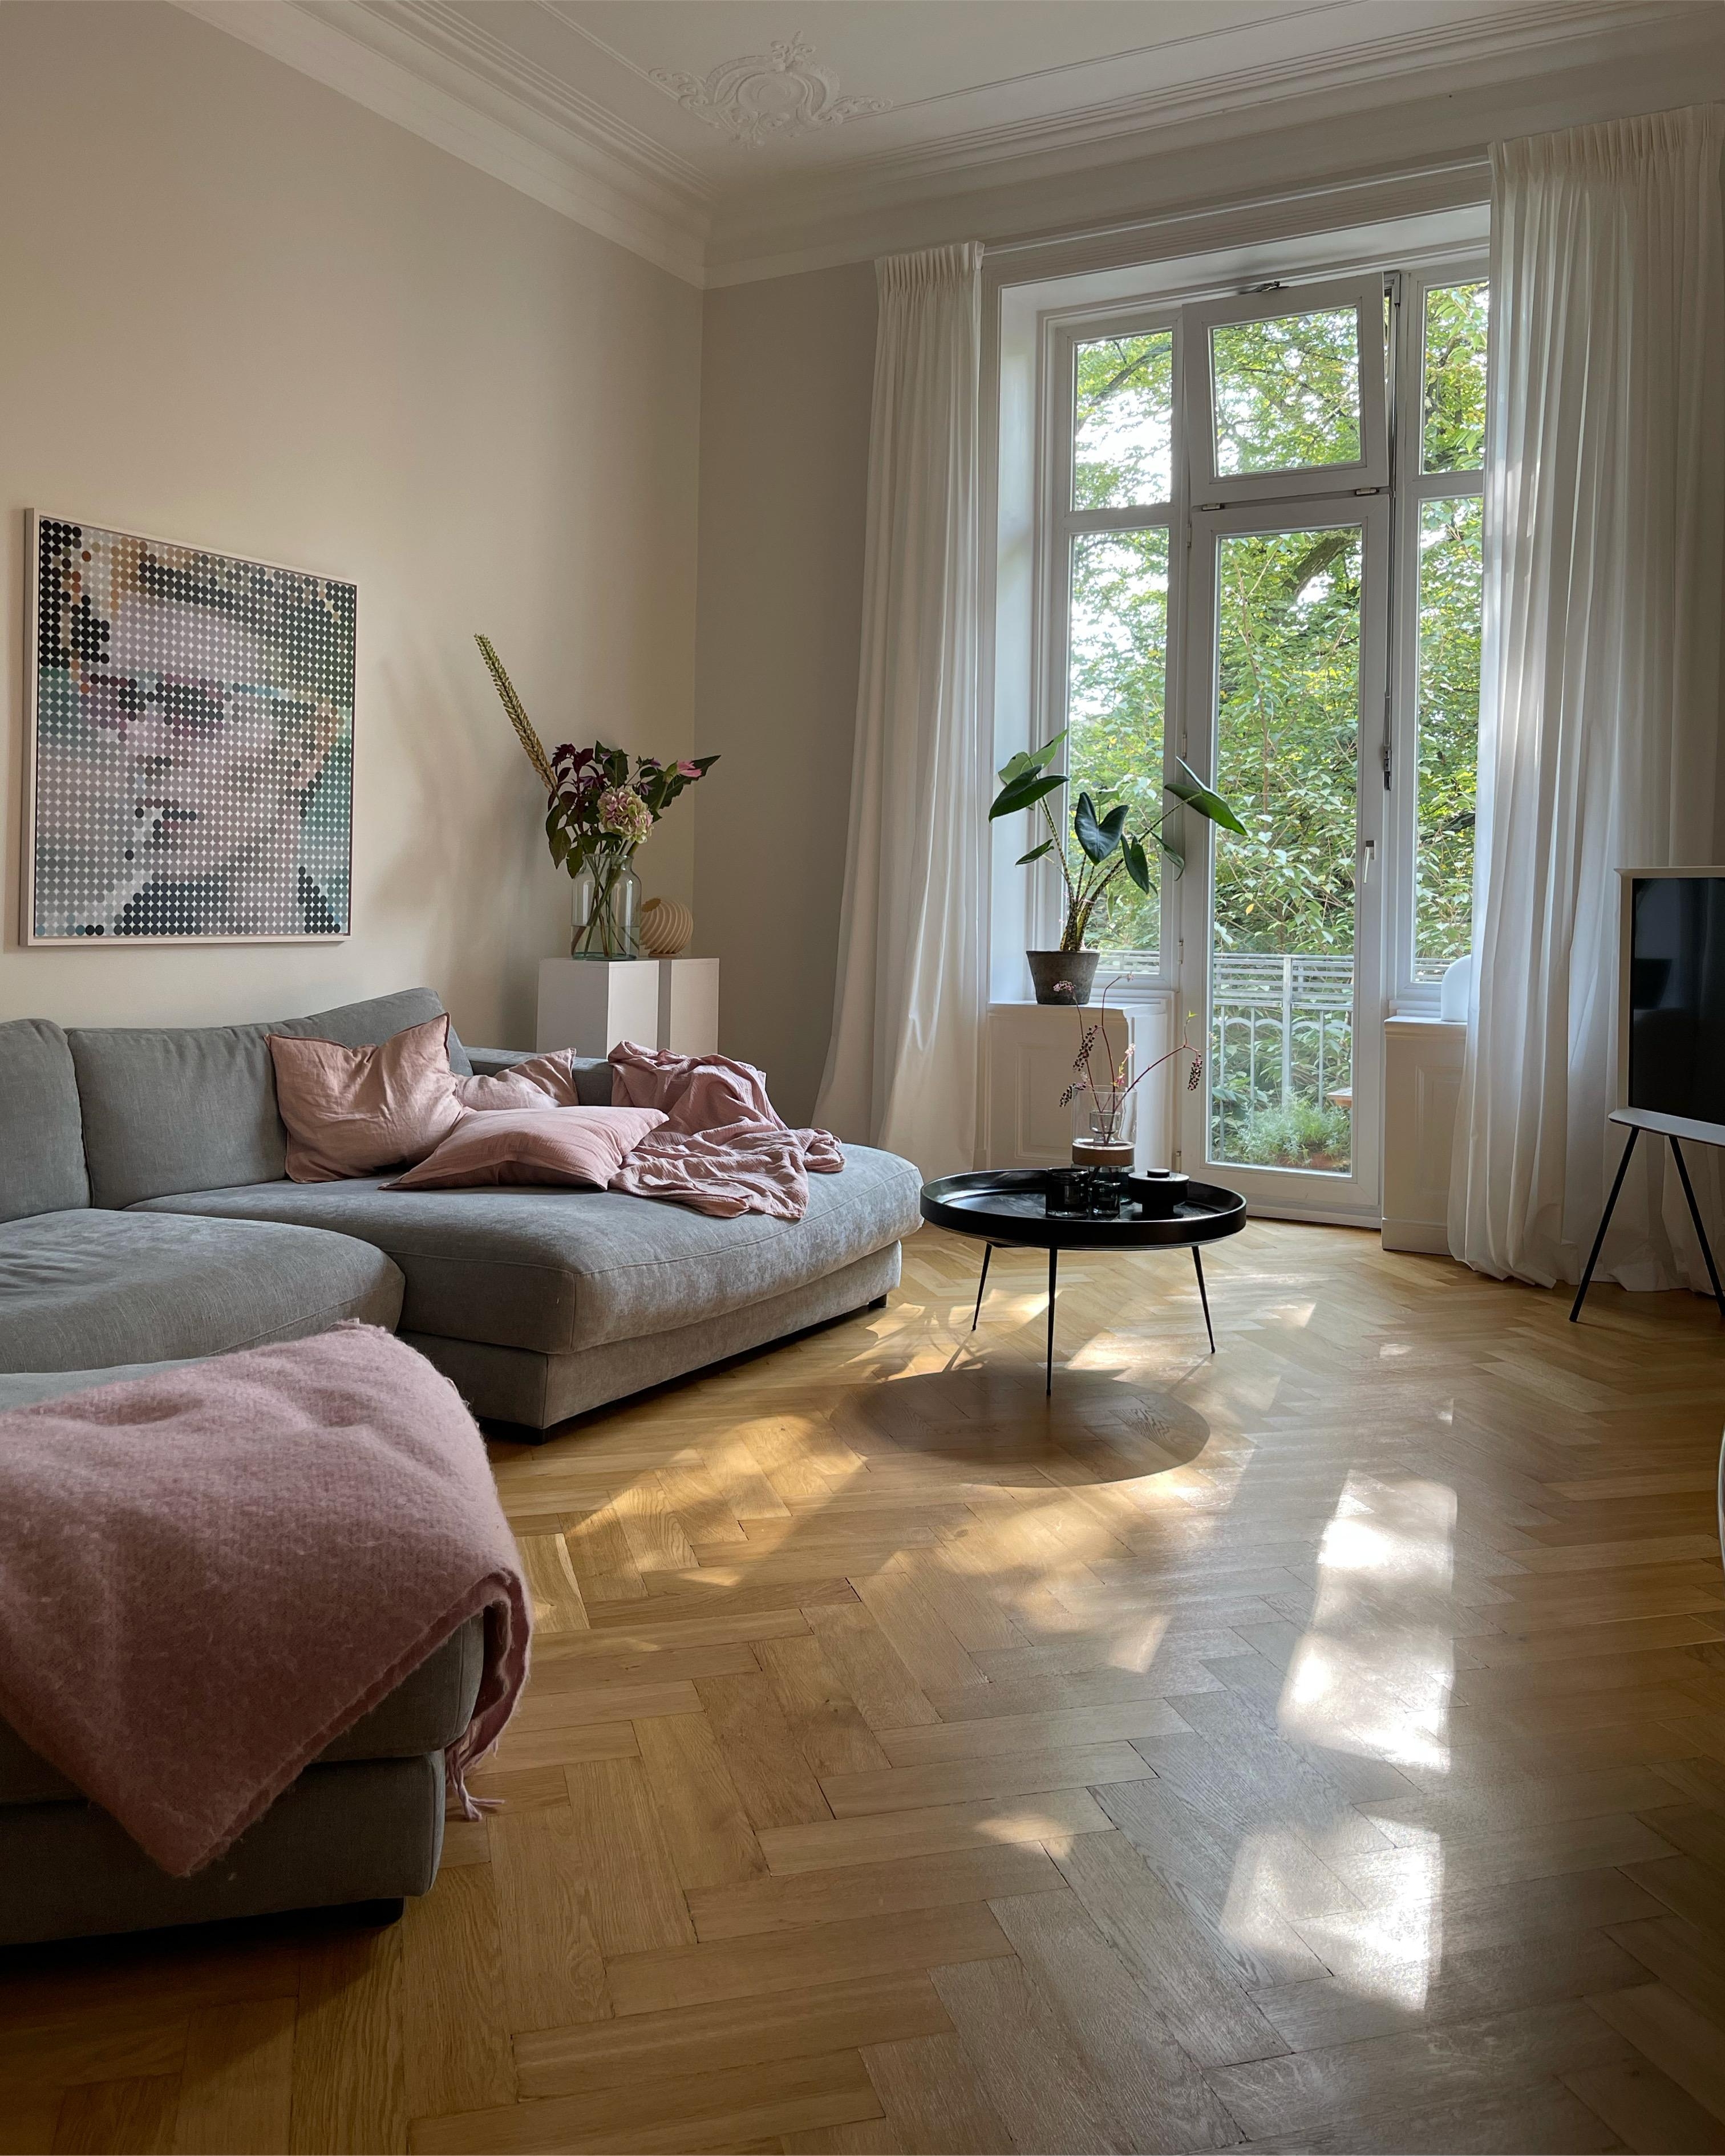 #wohnen #livingroom #sunlight #davidbowie #colourfulliving #myhome 